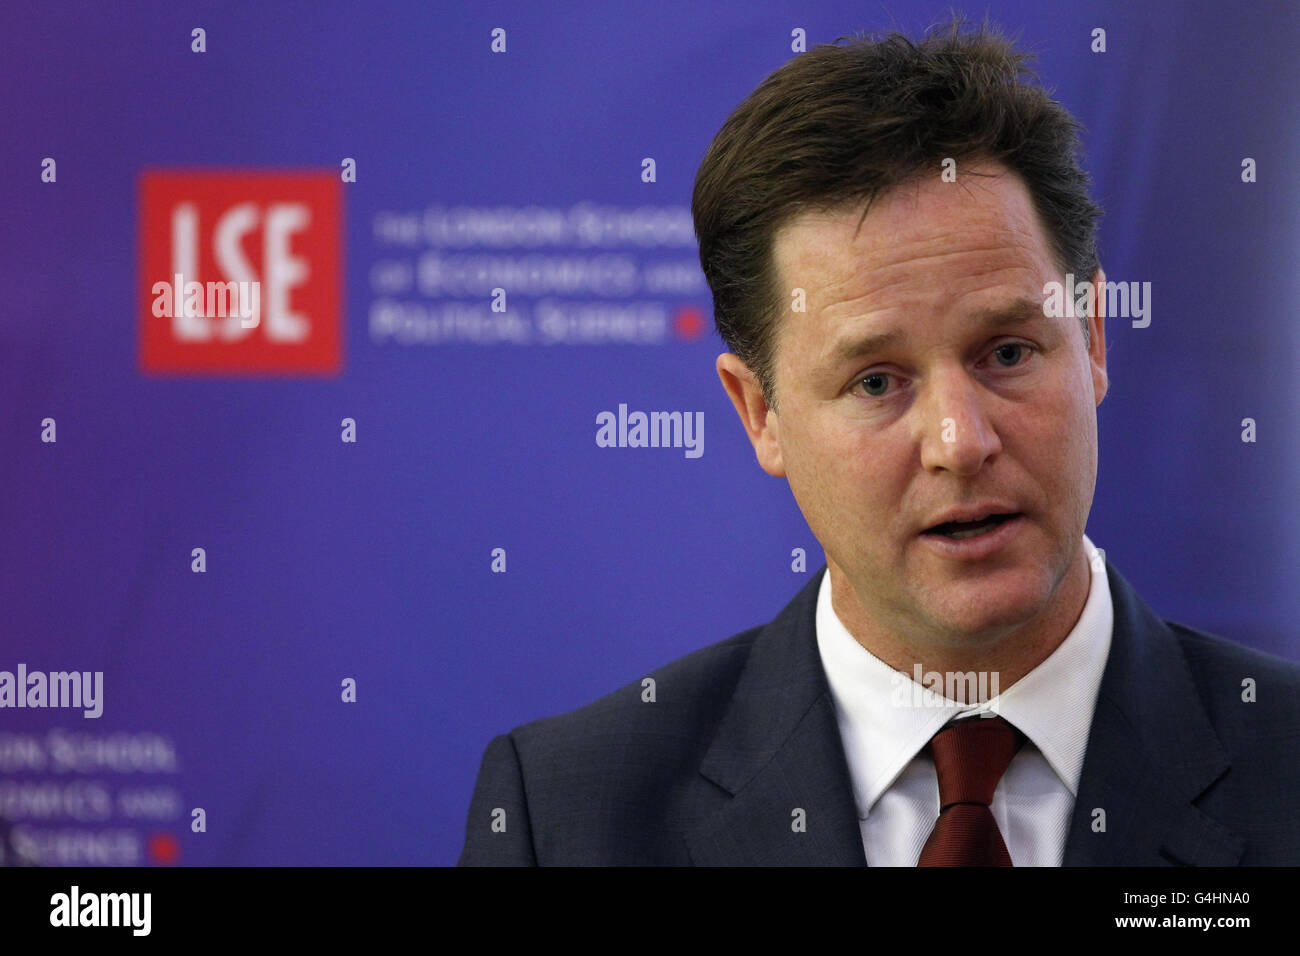 Il vice primo ministro Nick Clegg si rivolge a un'udienza alla London School of Economics (LSE) dove ha annunciato i piani per portare avanti i grandi progetti infrastrutturali in relazione alla nuova agenda economica del governo, che sperava avrebbe aiutato a stimolare la crescita dell'economia. Foto Stock